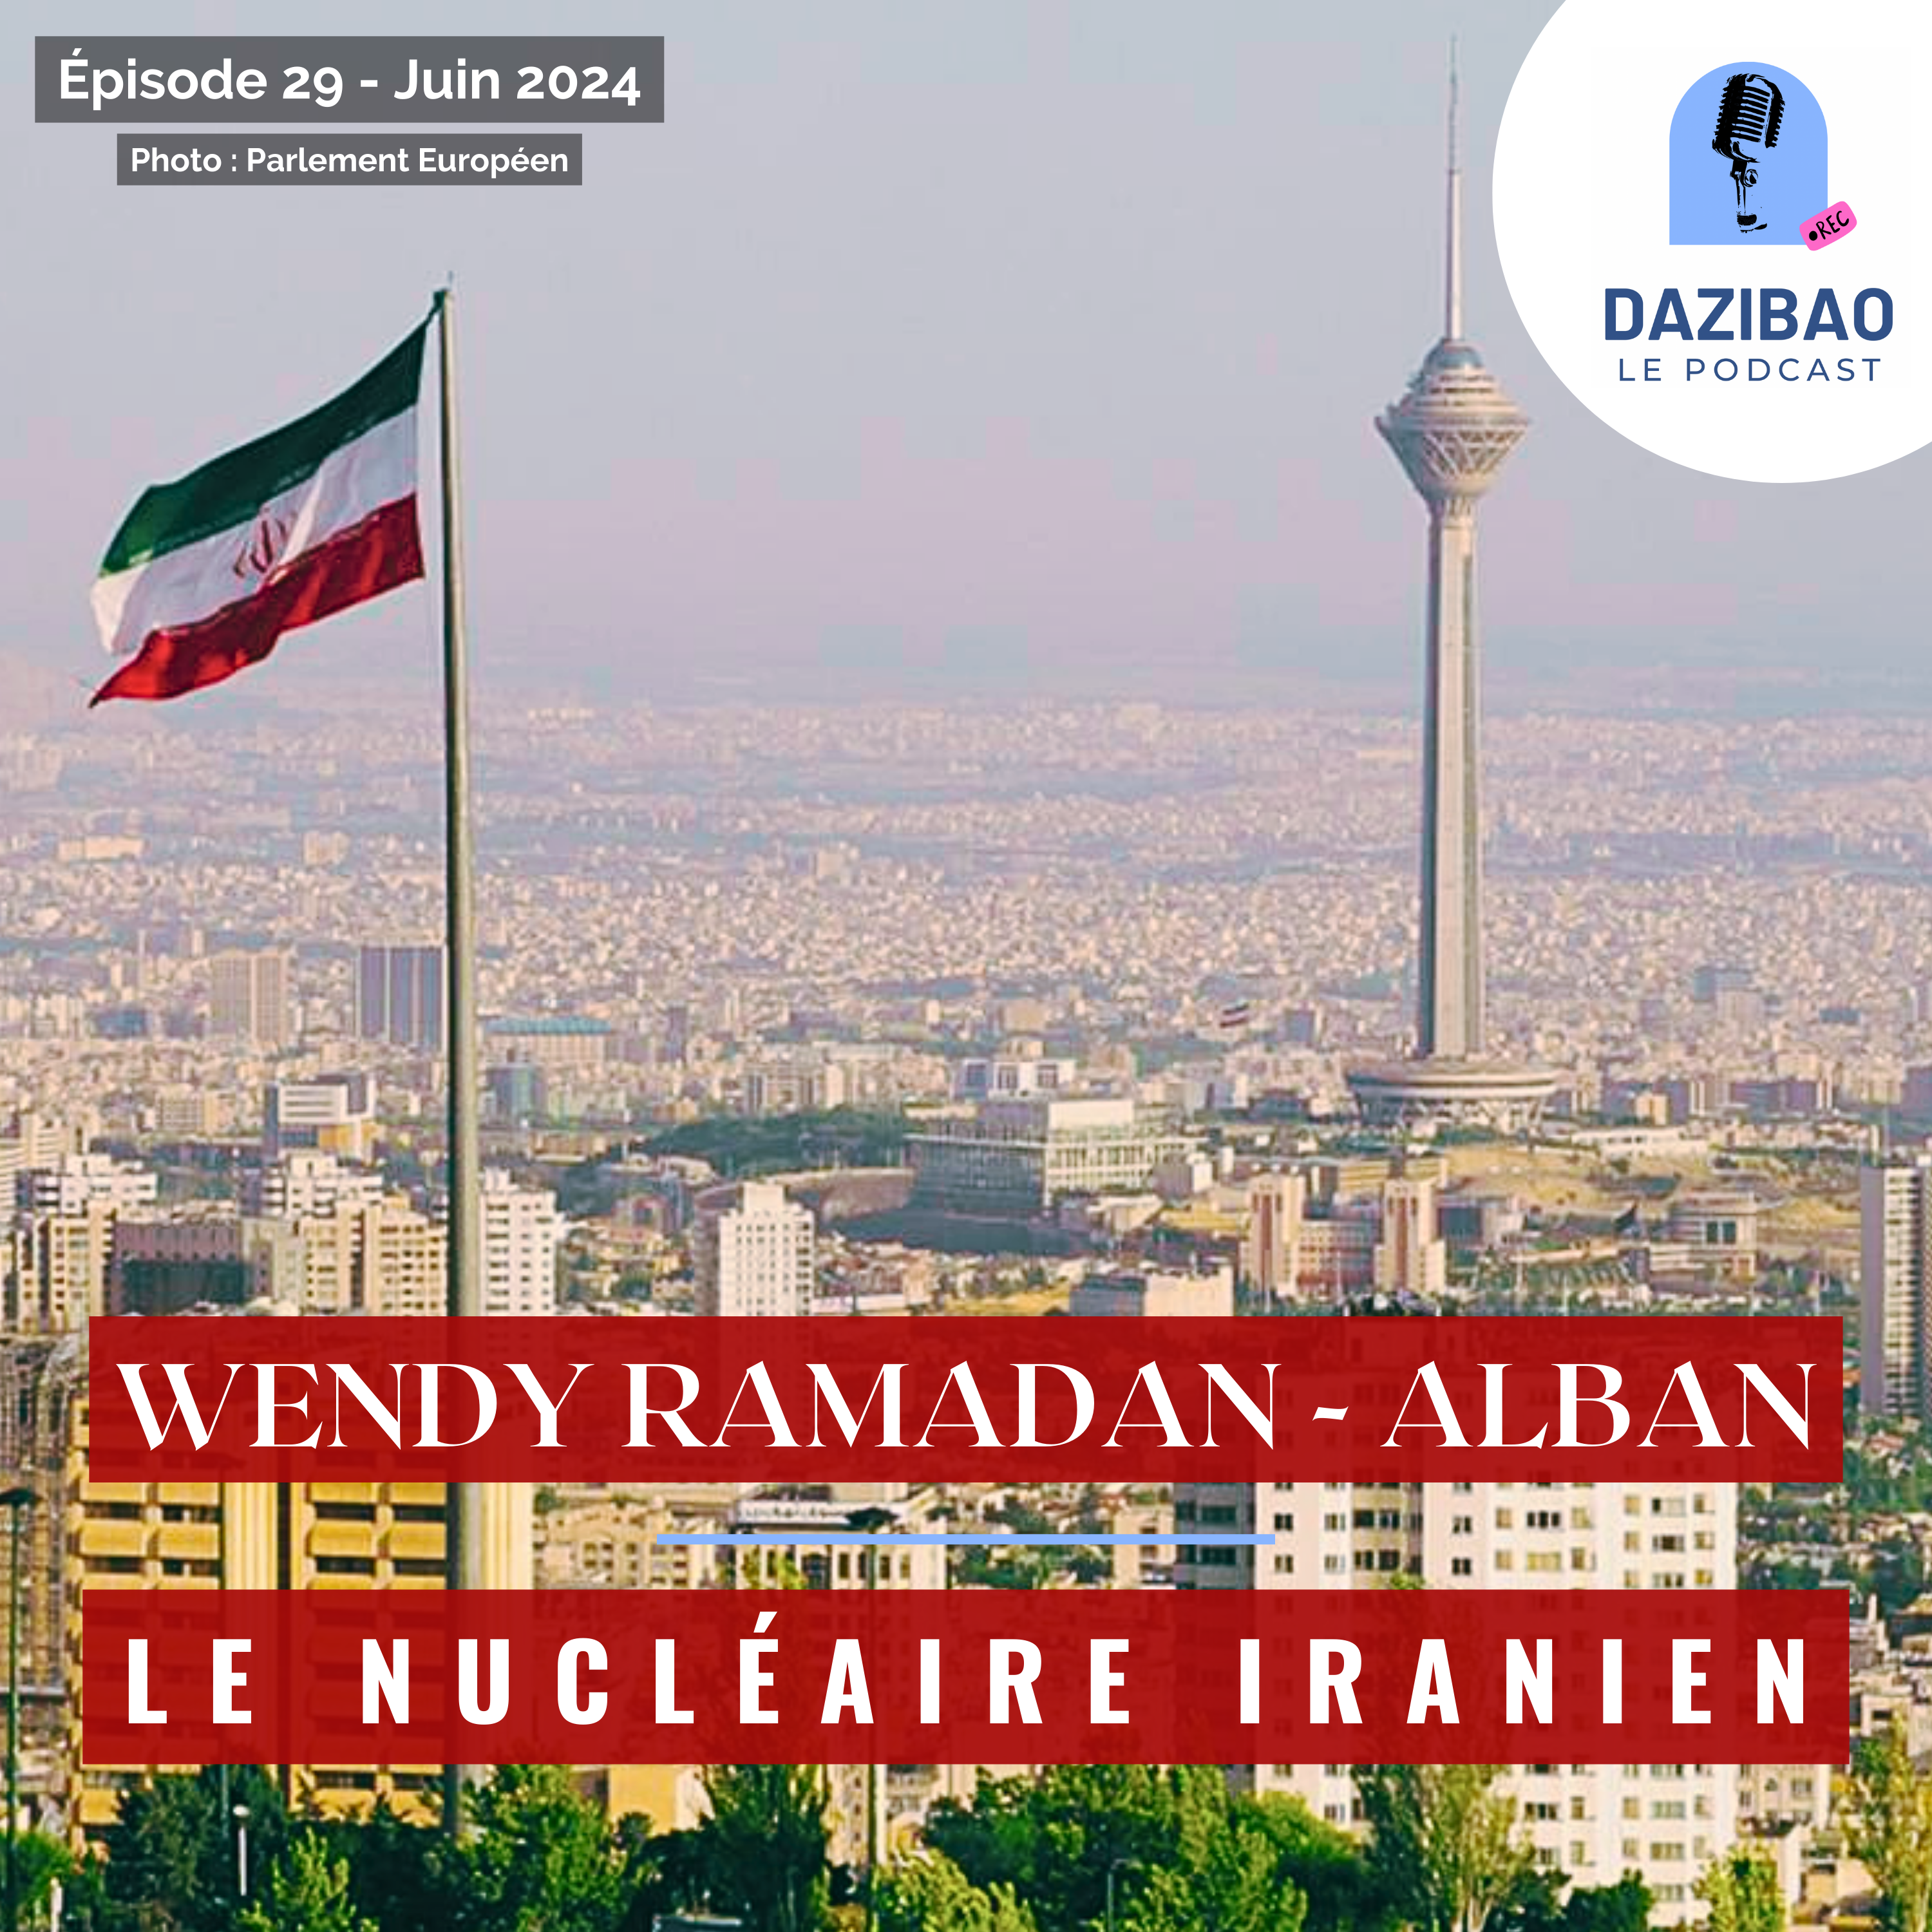 Épisode 29 : Wendy et le nucléaire iranien.